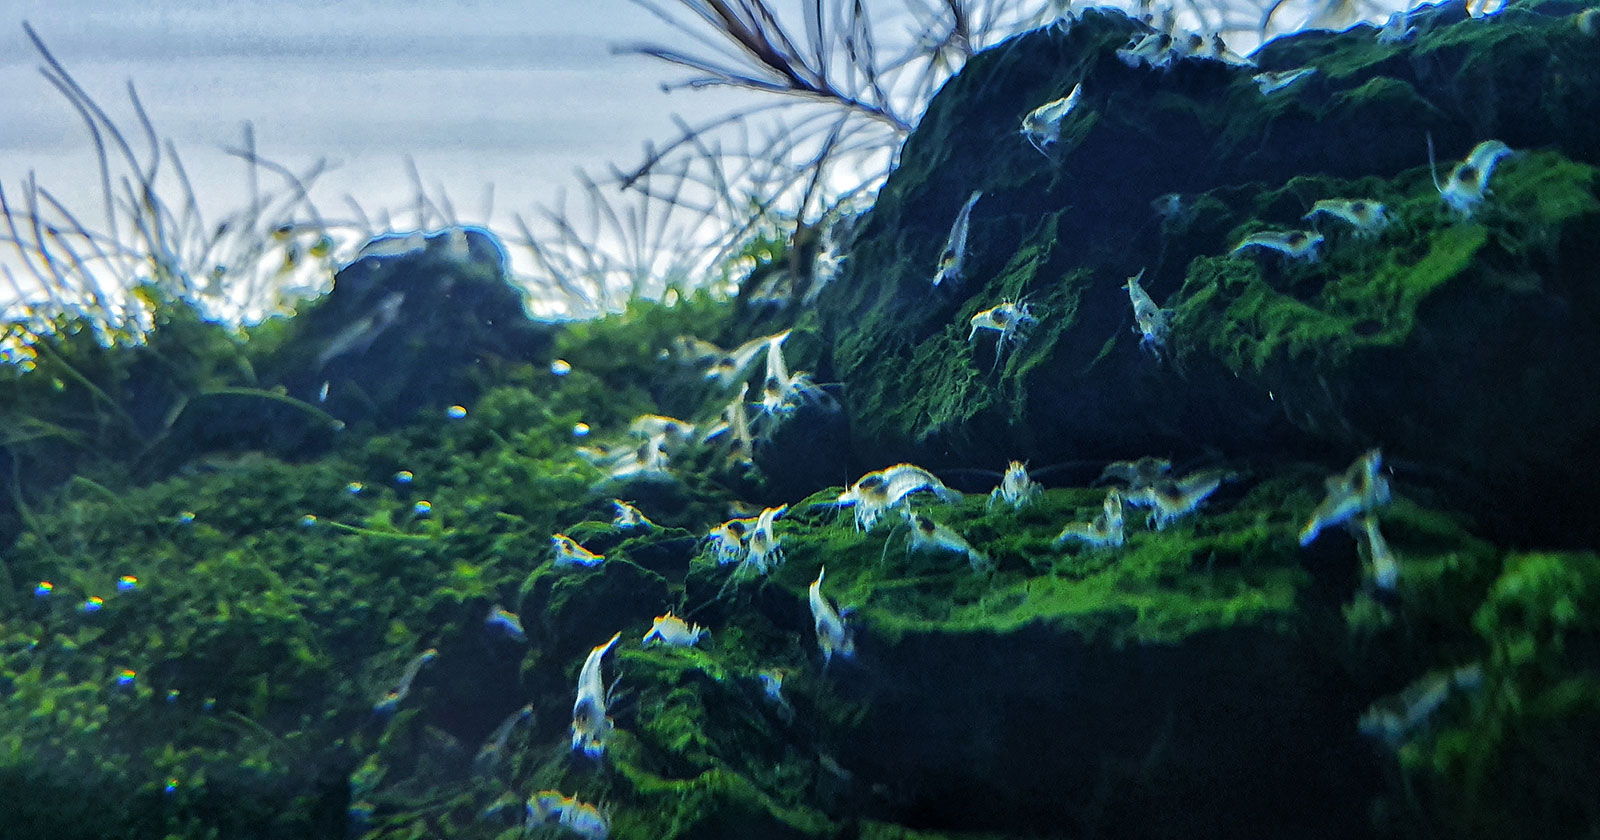 Die Neocaridina Garnelen haben sich im Aquascape stark vermehrt